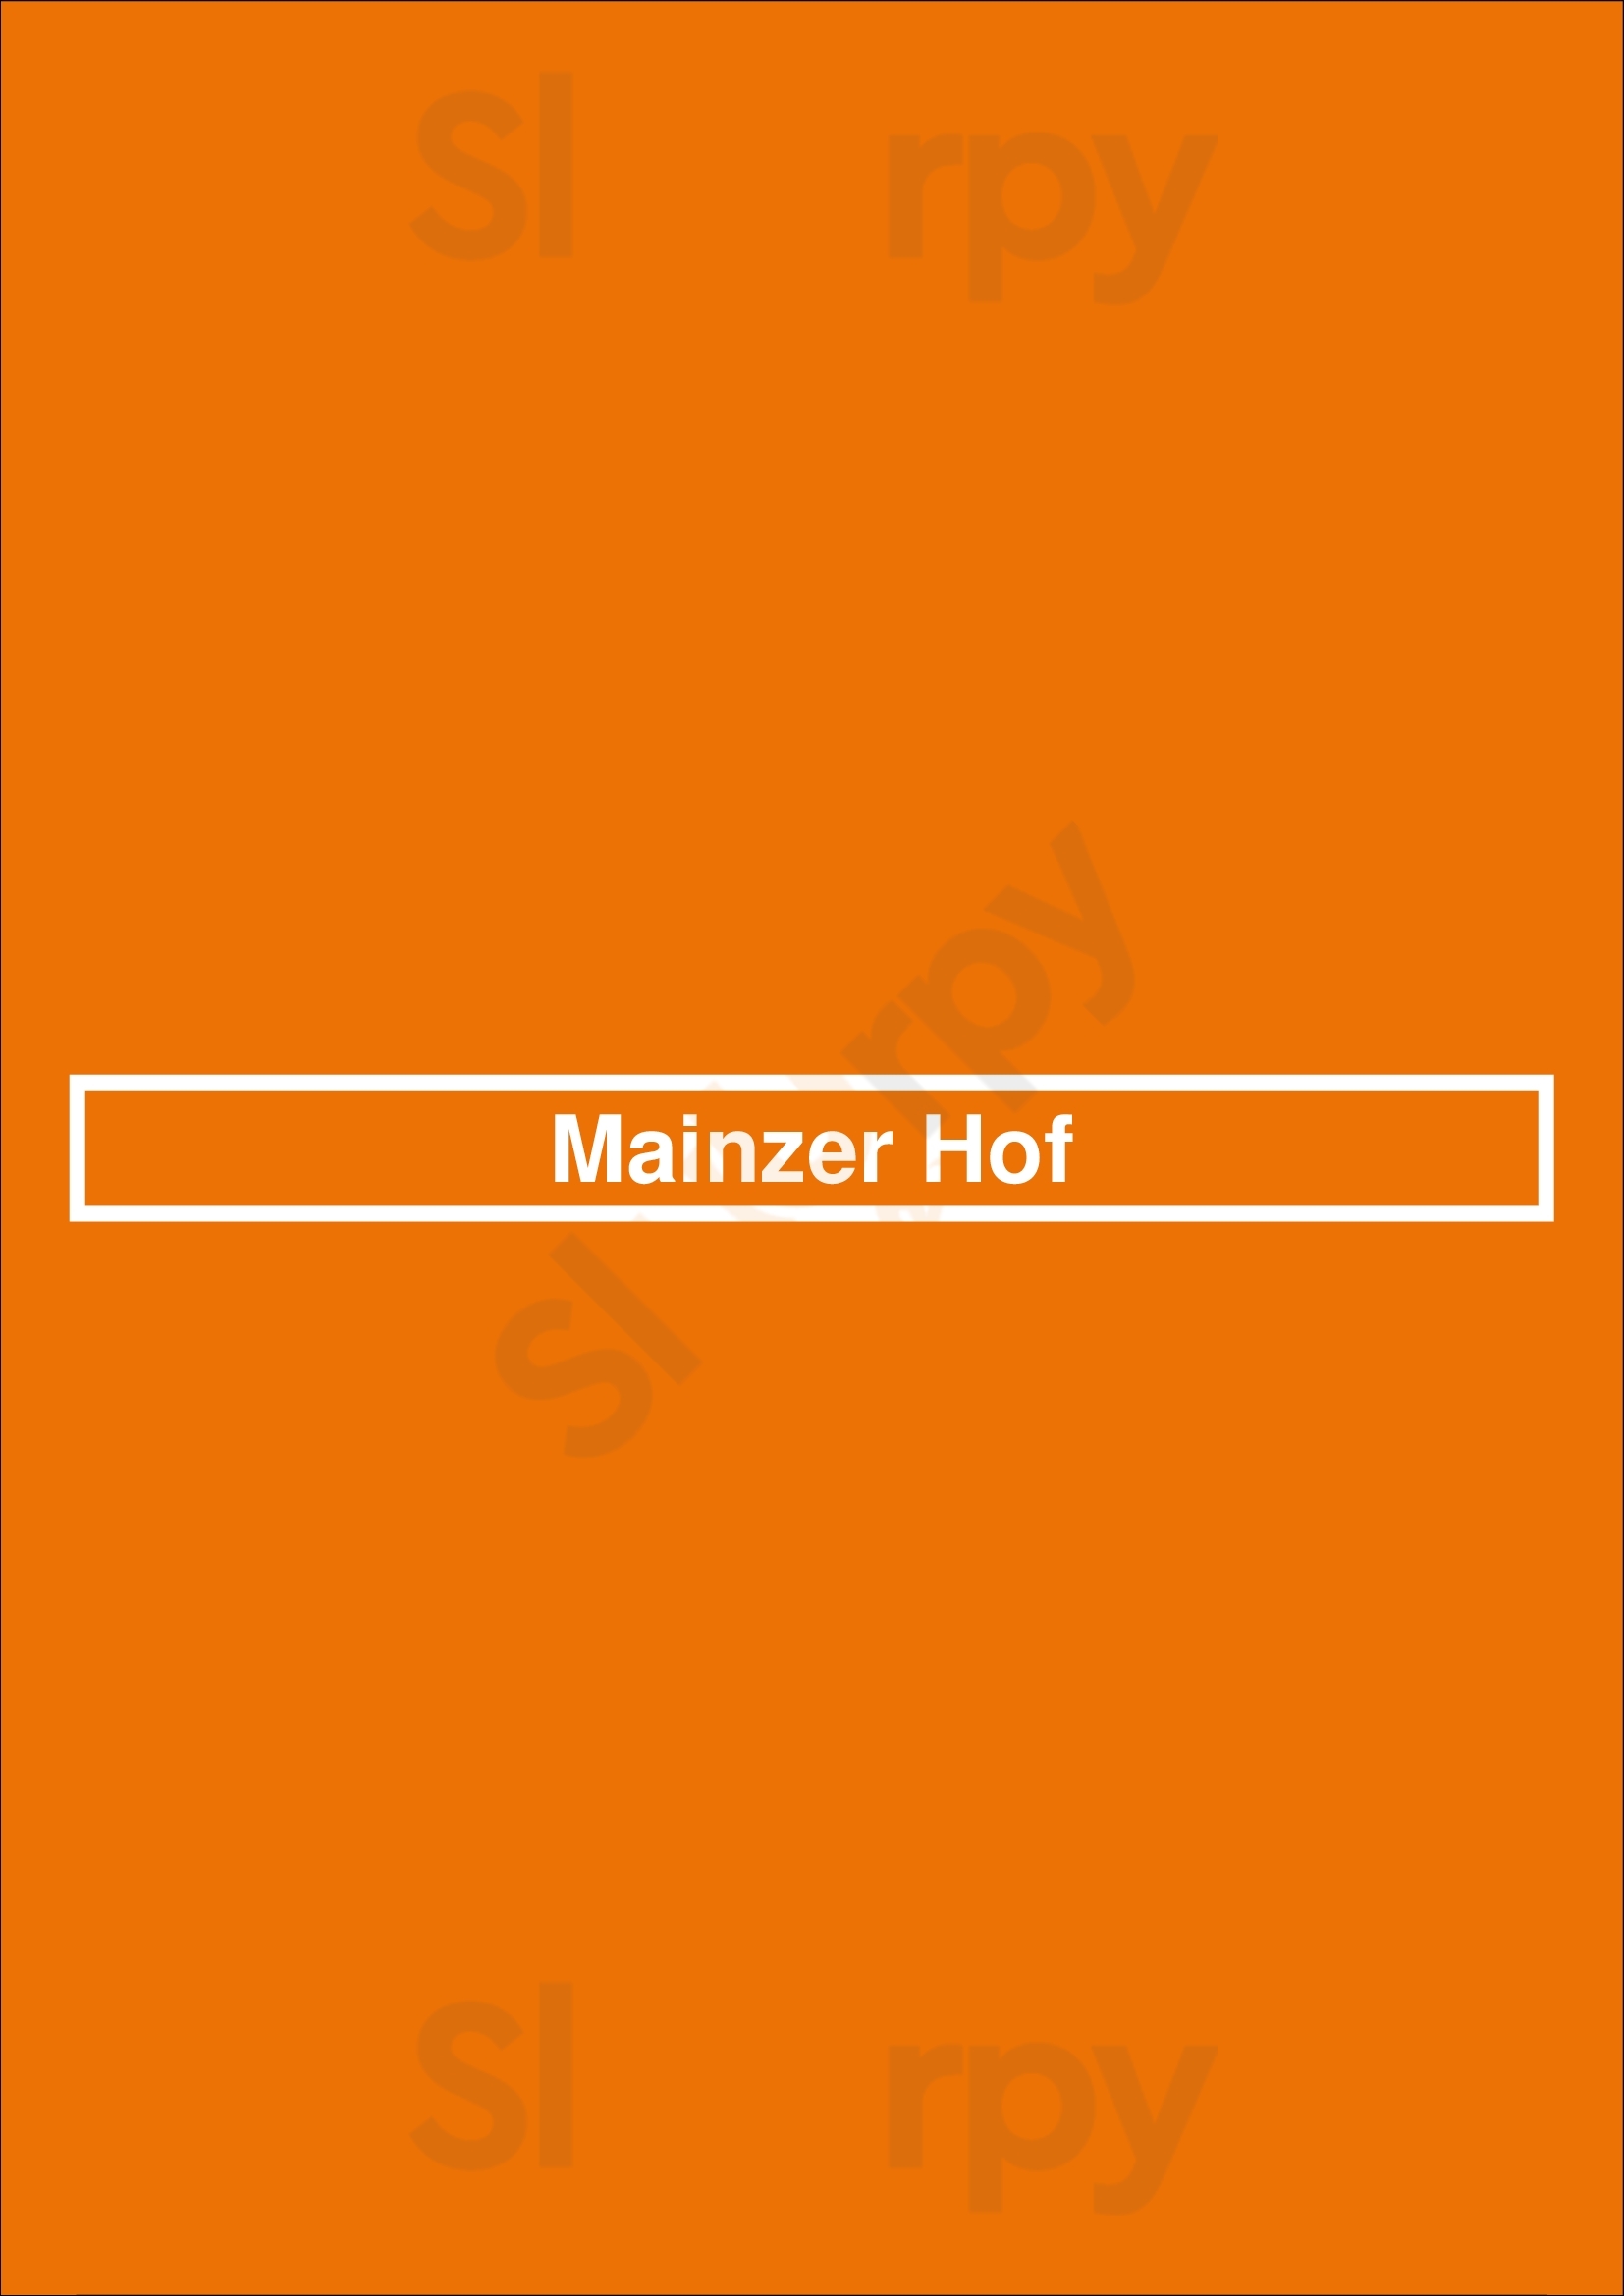 Mainzer Hof Köln Menu - 1